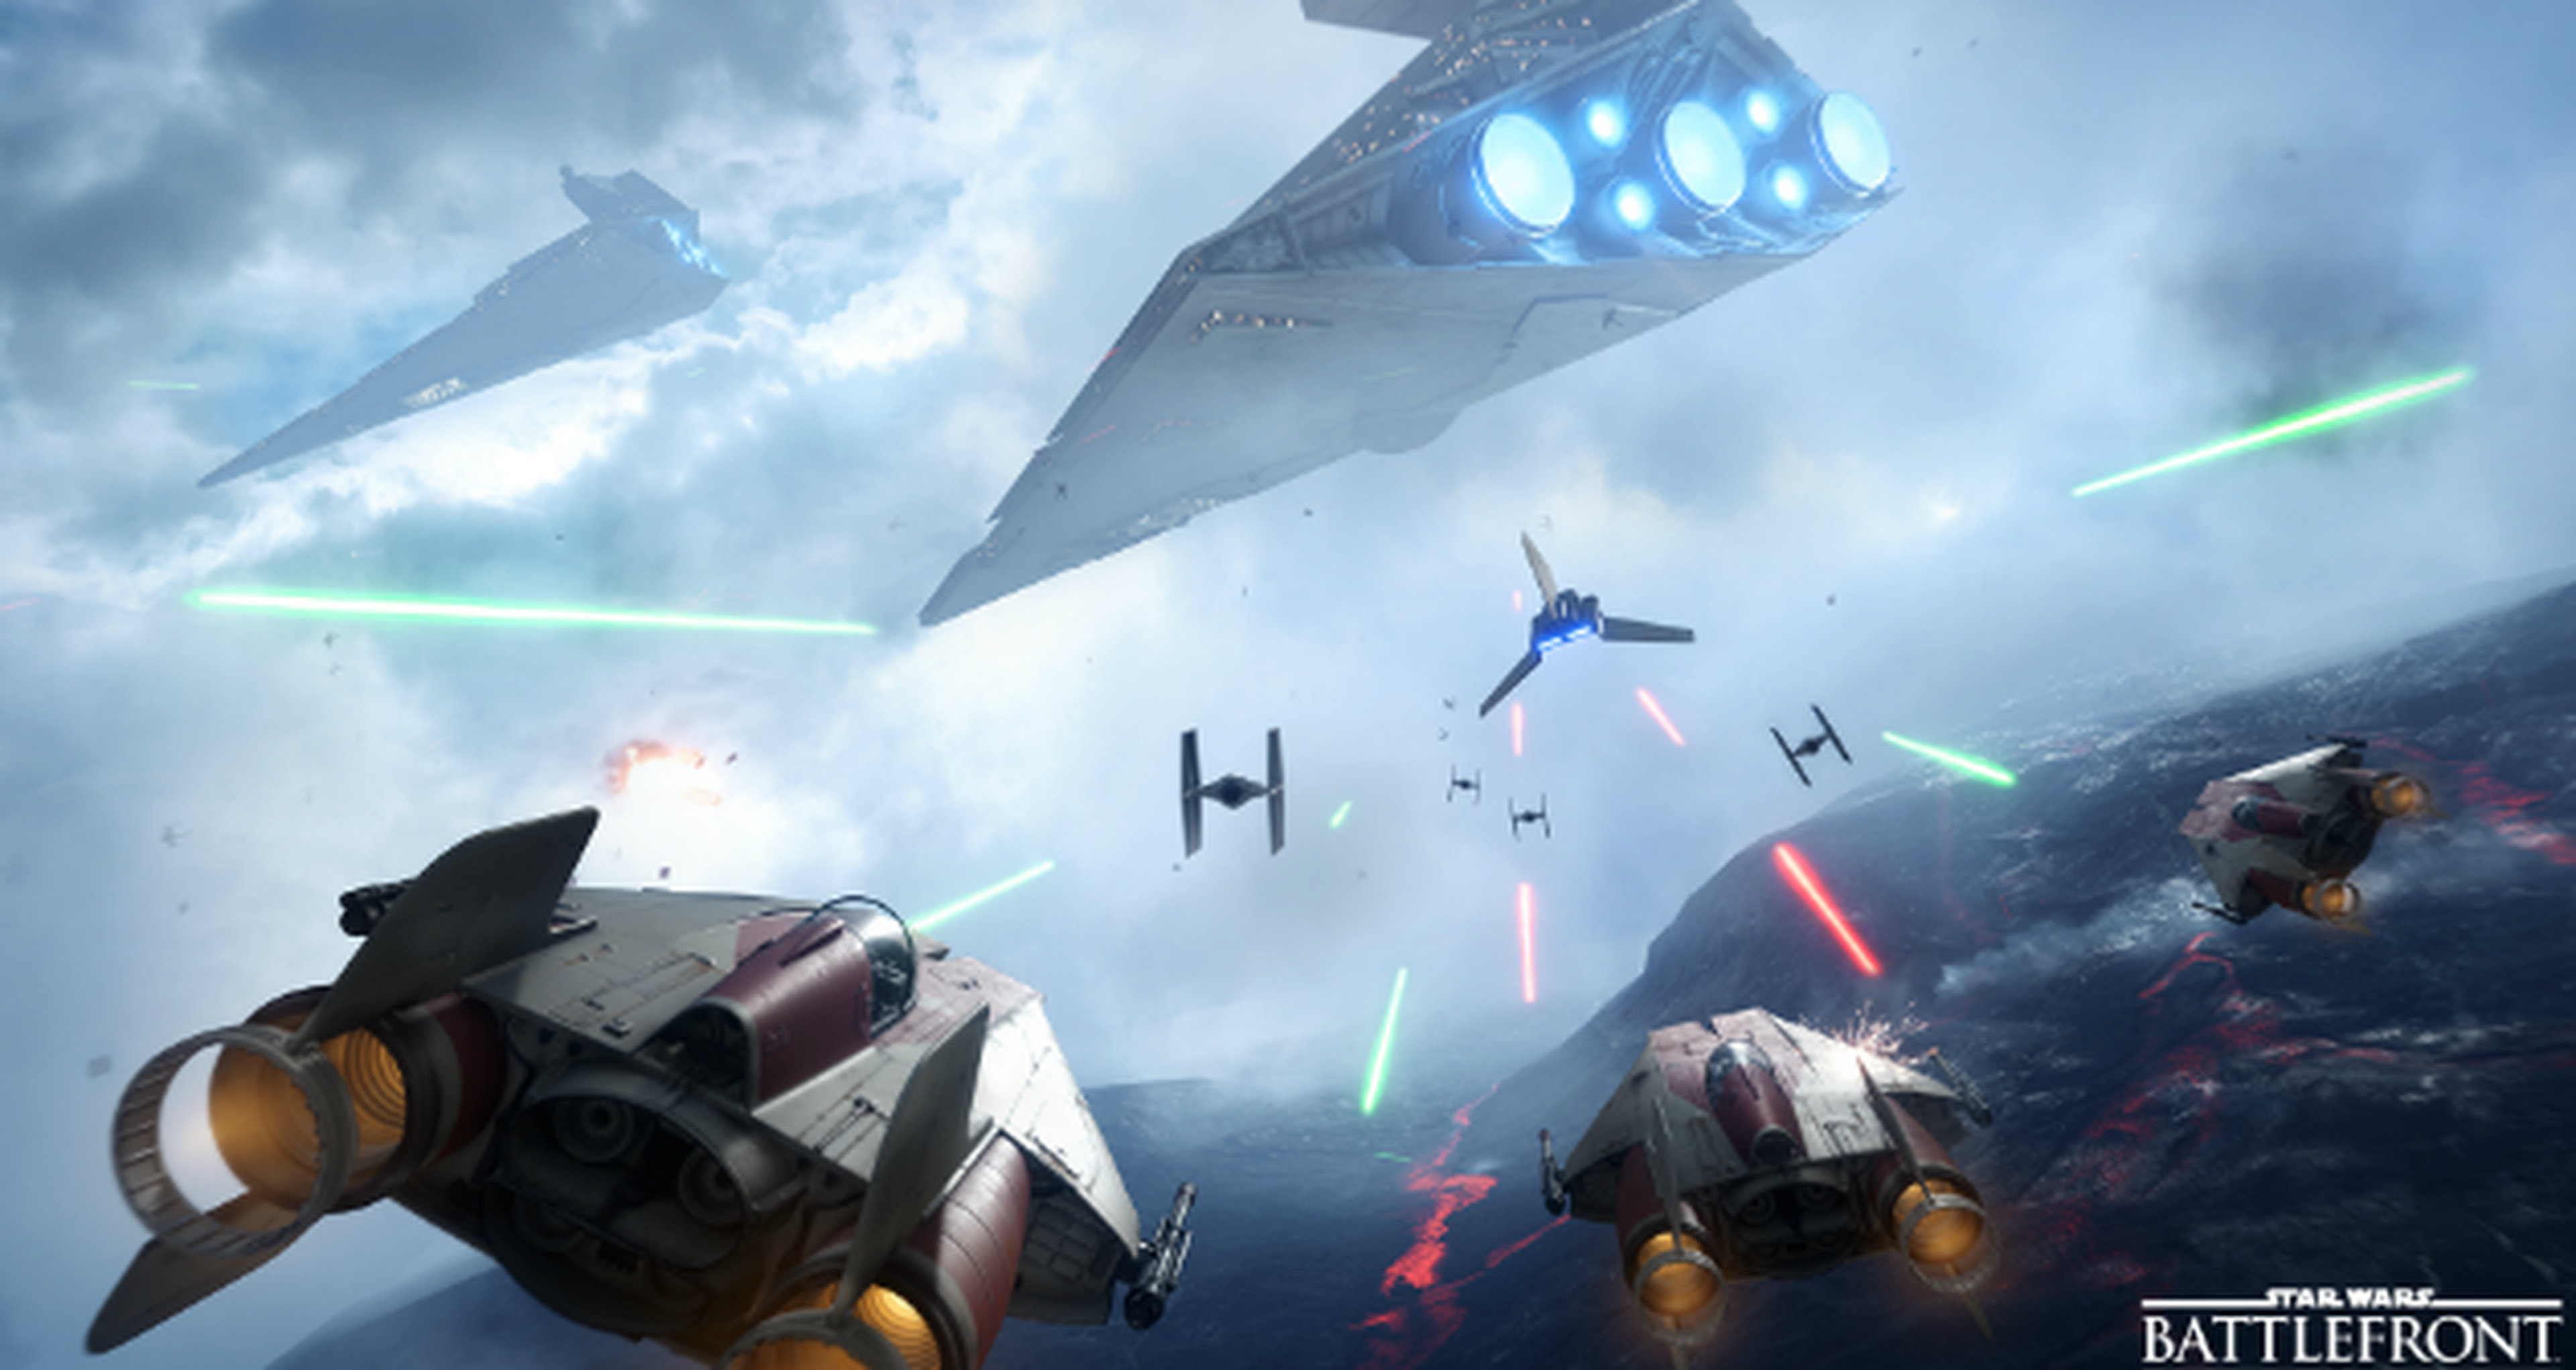 Star Wars Battlefront, EA espera vender 13 millones de unidades